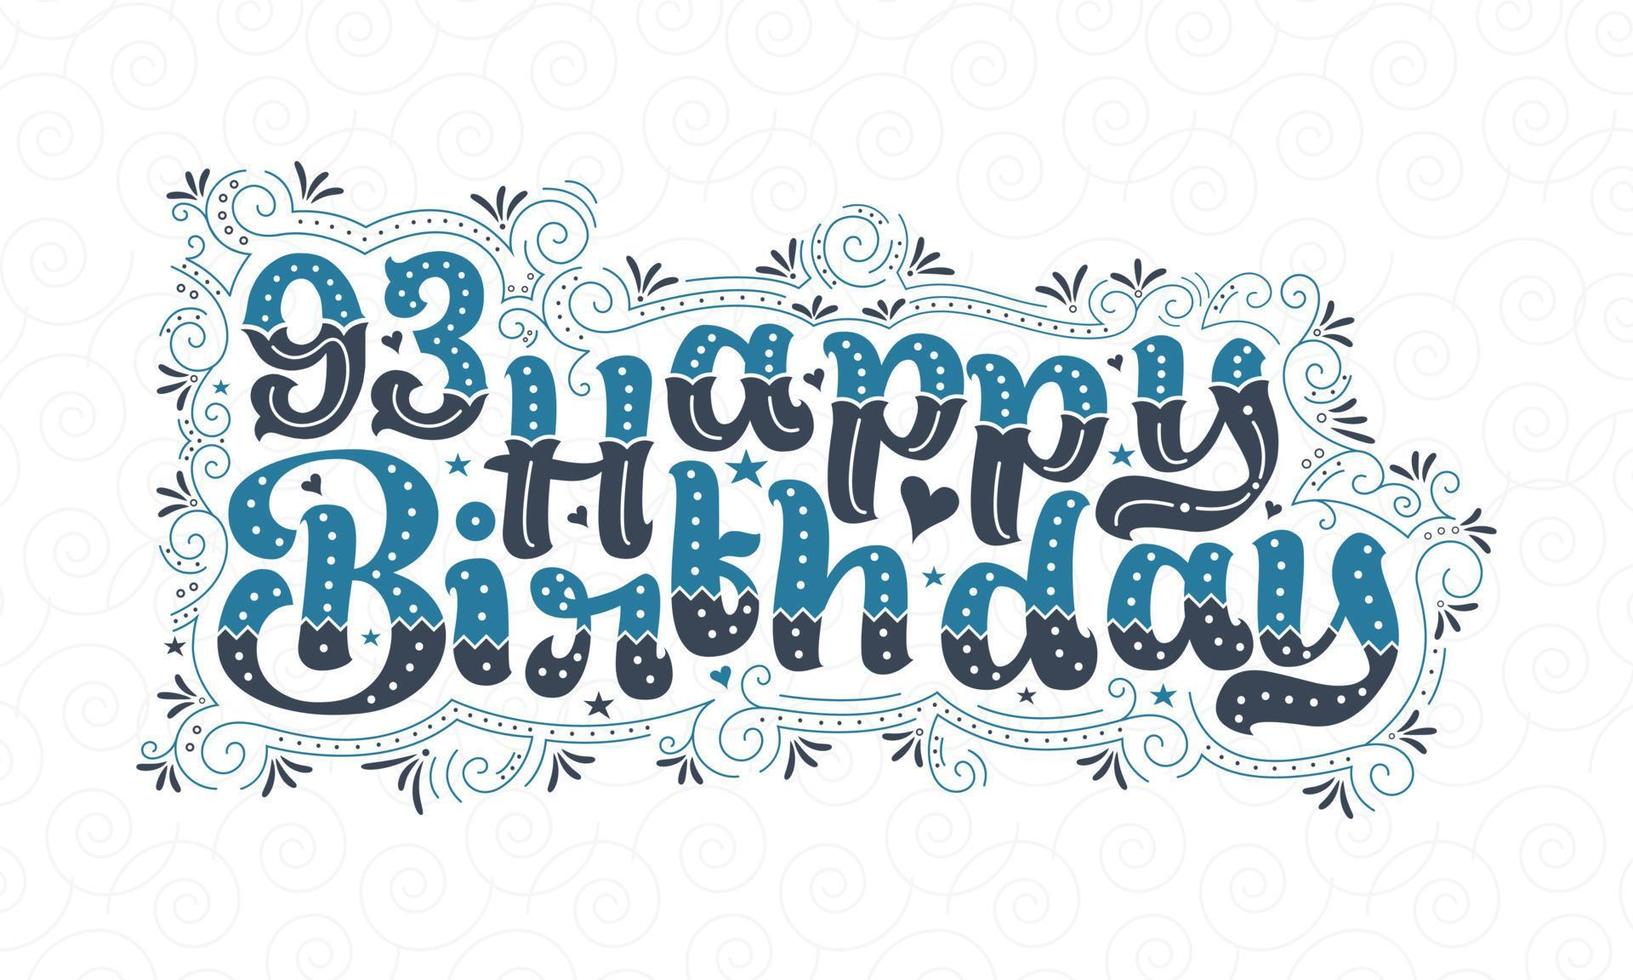 93e lettrage de joyeux anniversaire, 93 ans d'anniversaire belle conception de typographie avec des points, des lignes et des feuilles bleus et noirs. vecteur